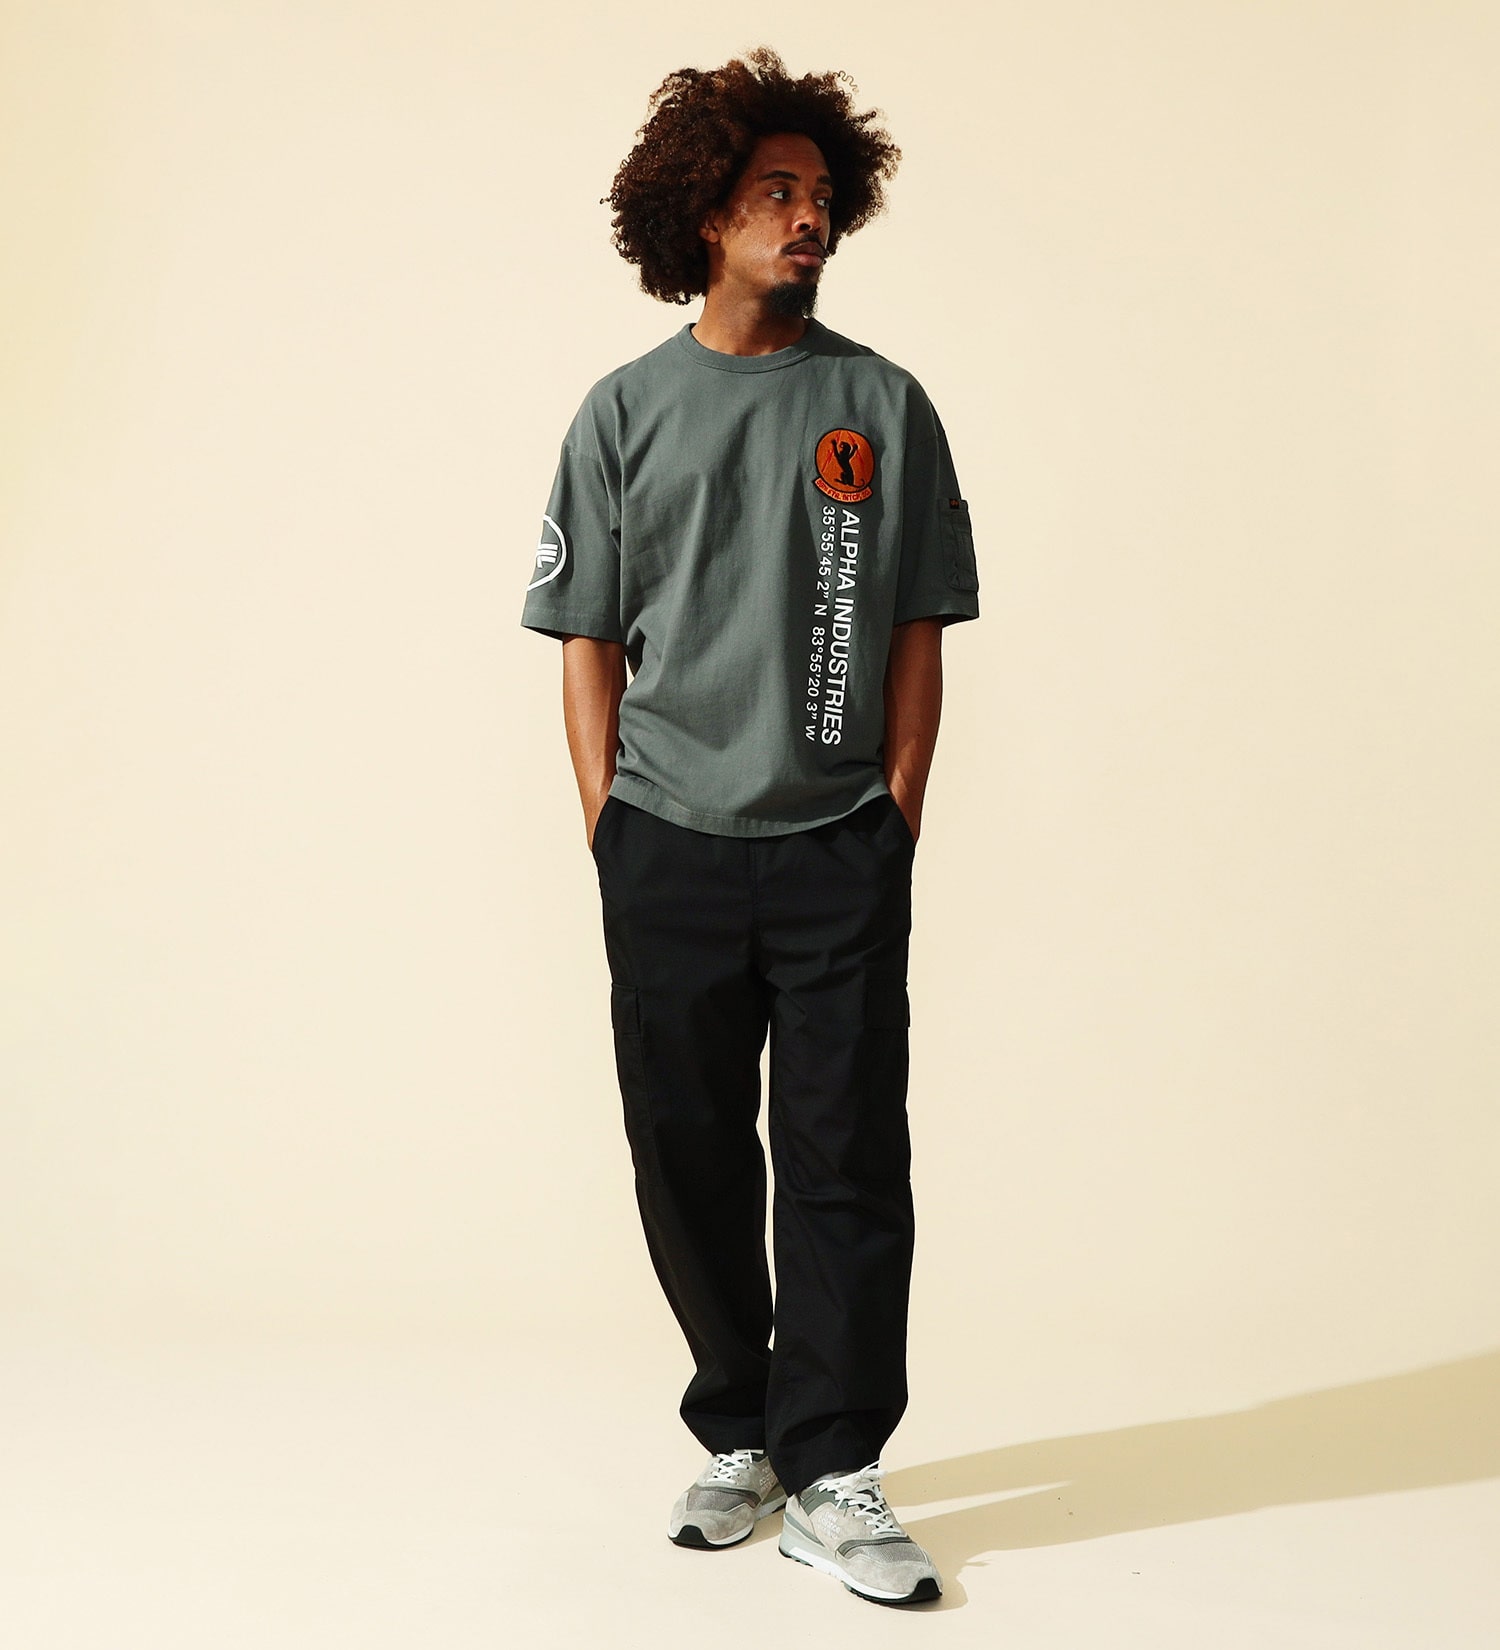 ALPHA(アルファ)のUSAF パッチプリントTシャツ 半袖|トップス/Tシャツ/カットソー/メンズ|グレー